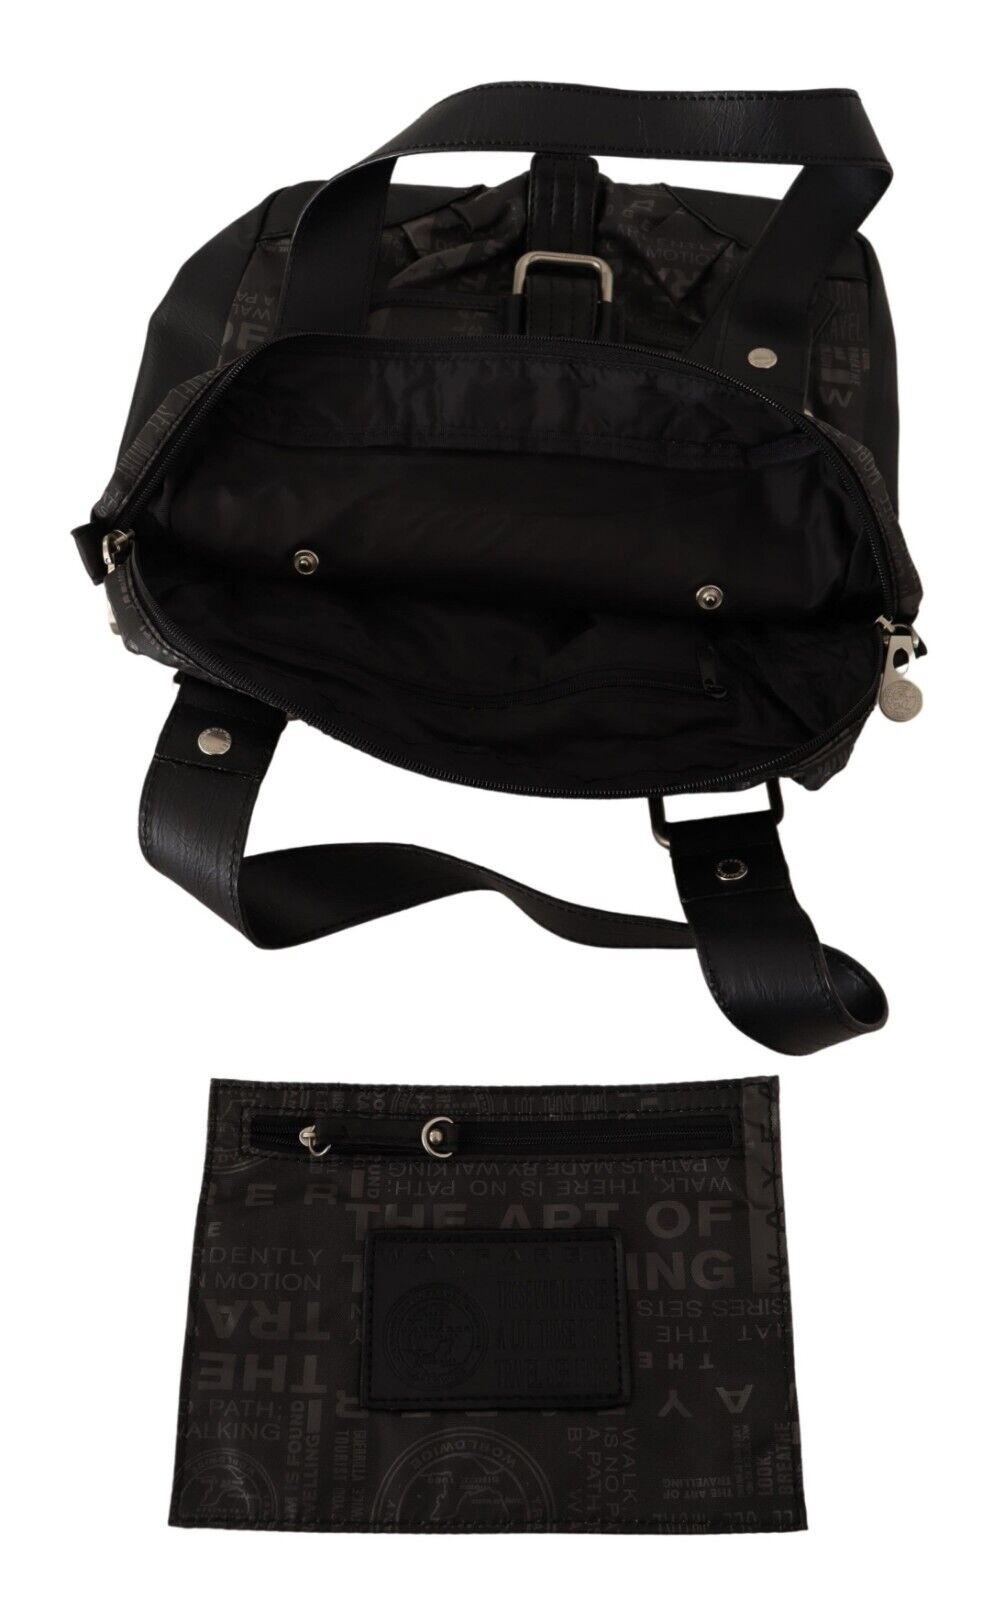 WAYFARER Black Printed Logo Shoulder Handbag Purse Bag - Fizigo